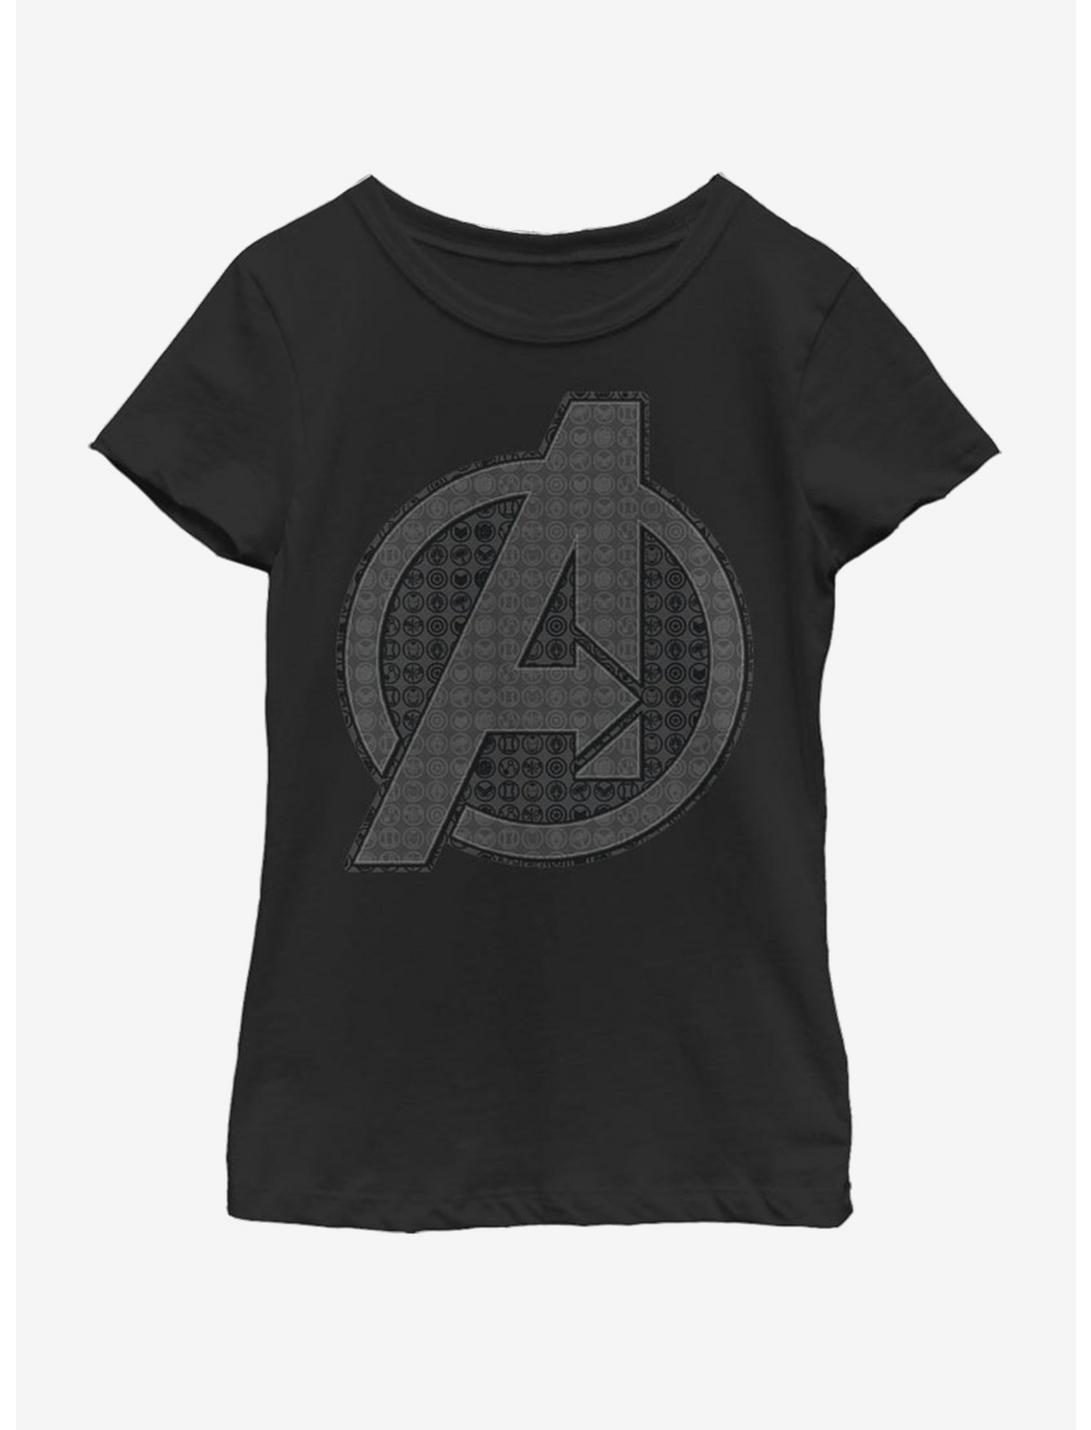 Marvel Avengers: Endgame Endgame Grayscale Logo Youth Girls T-Shirt, BLACK, hi-res